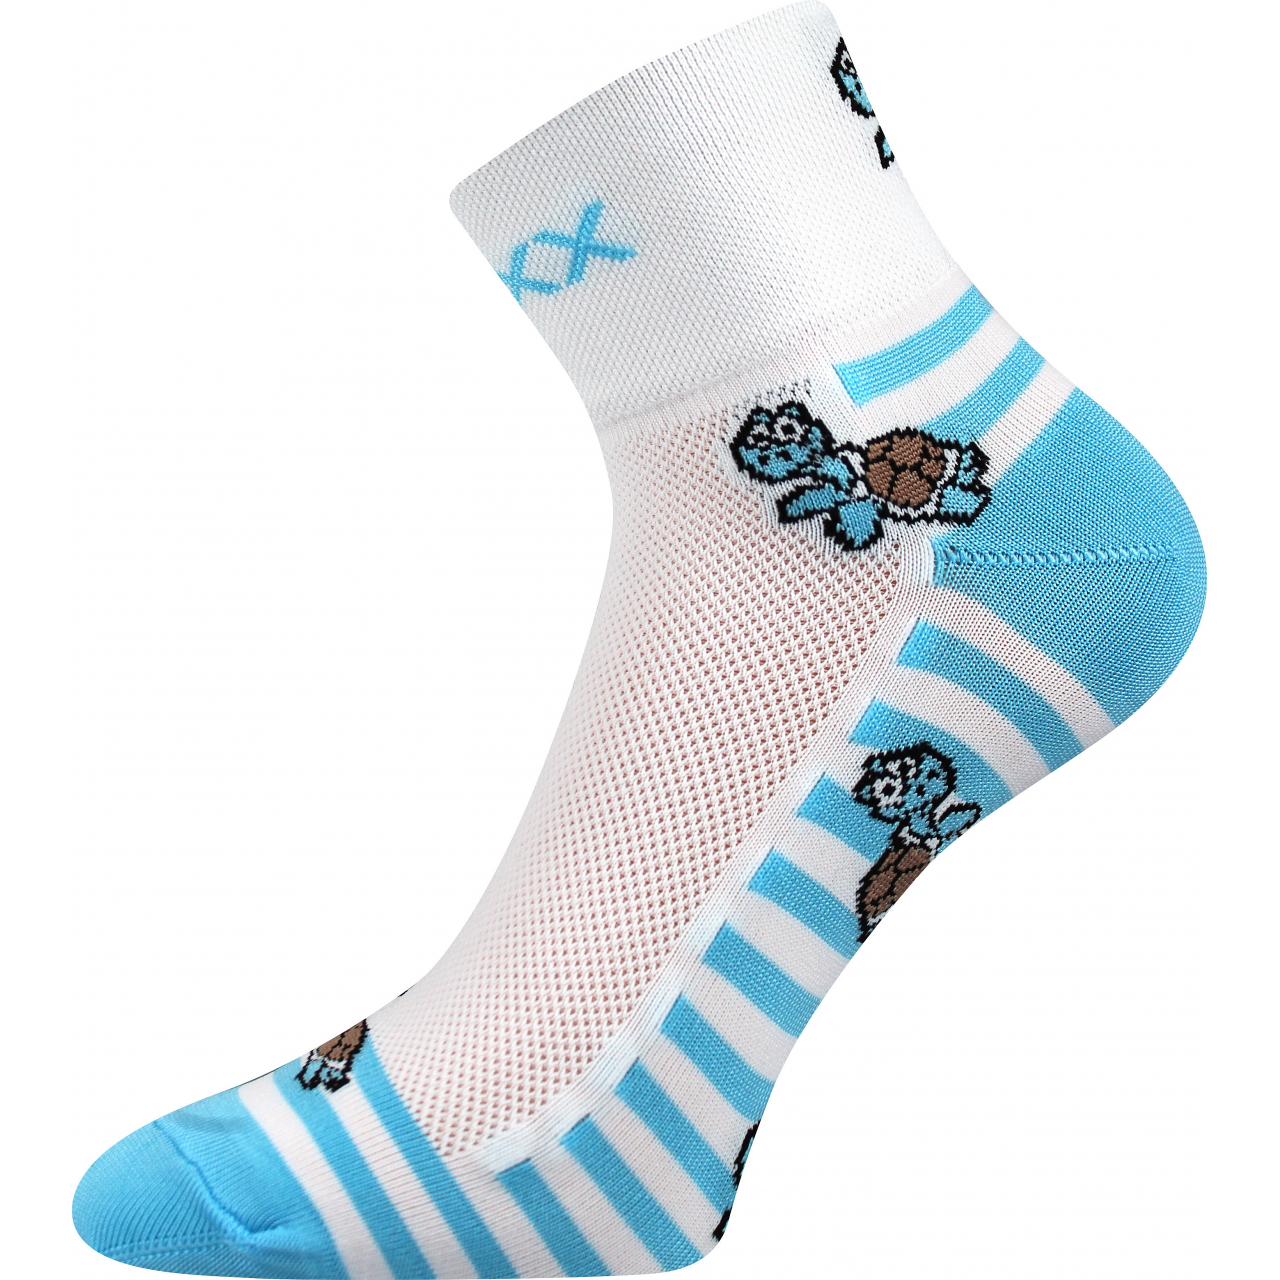 Ponožky sportovní unisex Voxx Ralf X Želvy - bílé-modré, 35-38